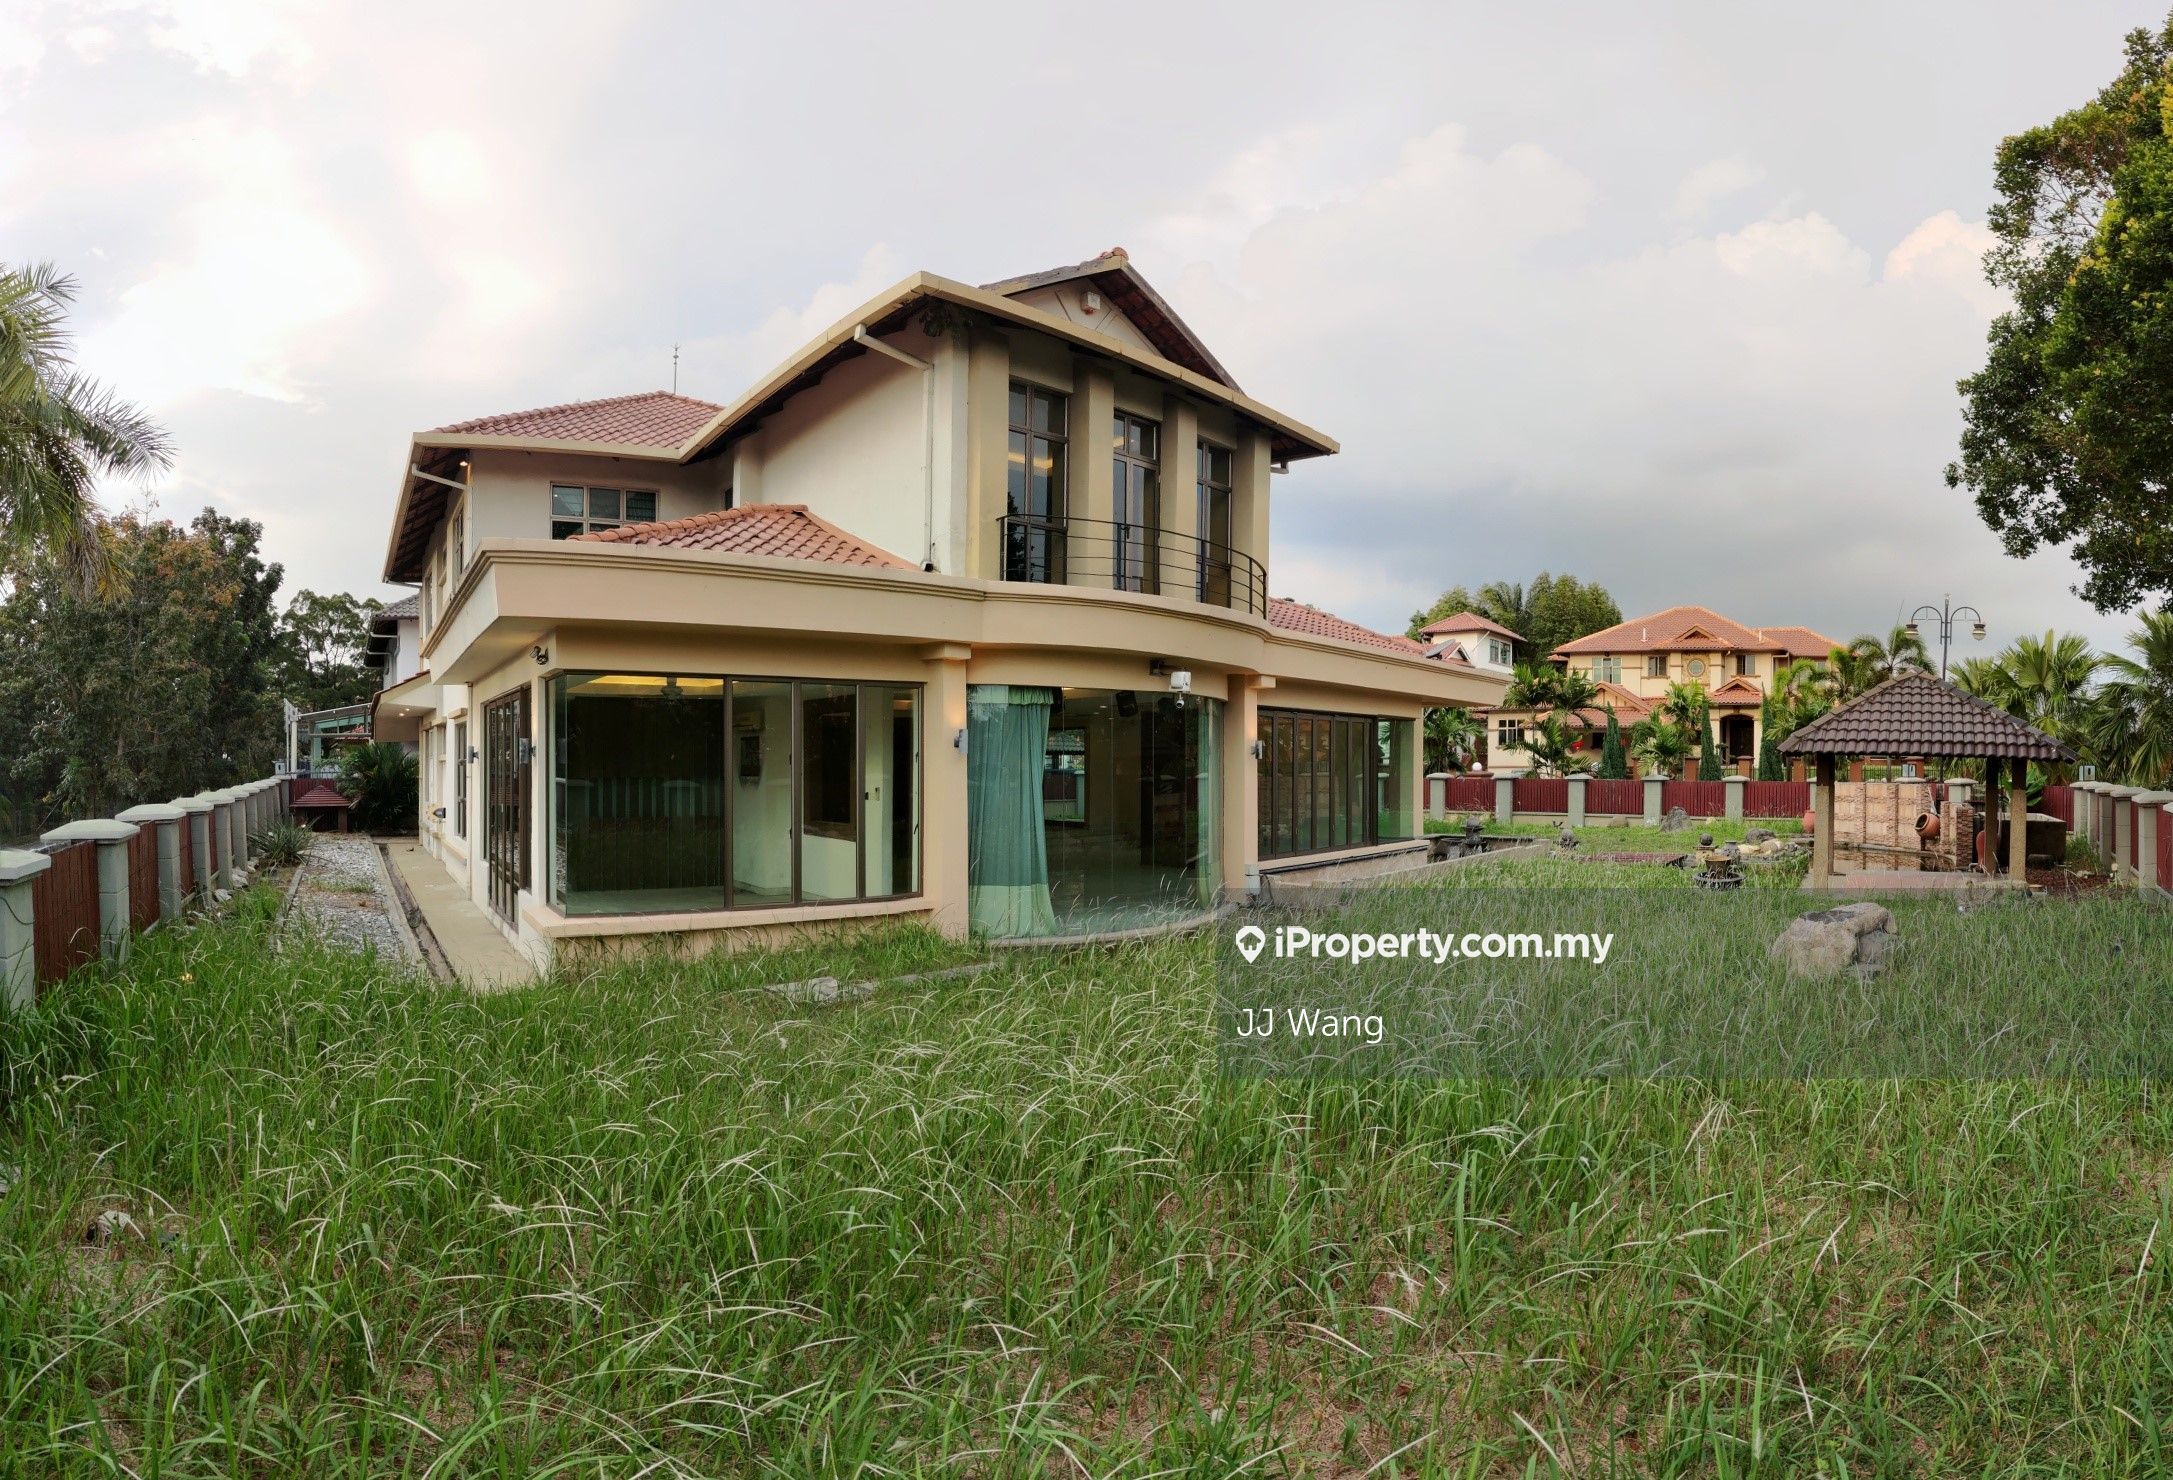 Hillside Manor Kota Kemuning Bungalow Shah Alam Corner Lot Bungalow 5 Bedrooms For Sale Iproperty Com My